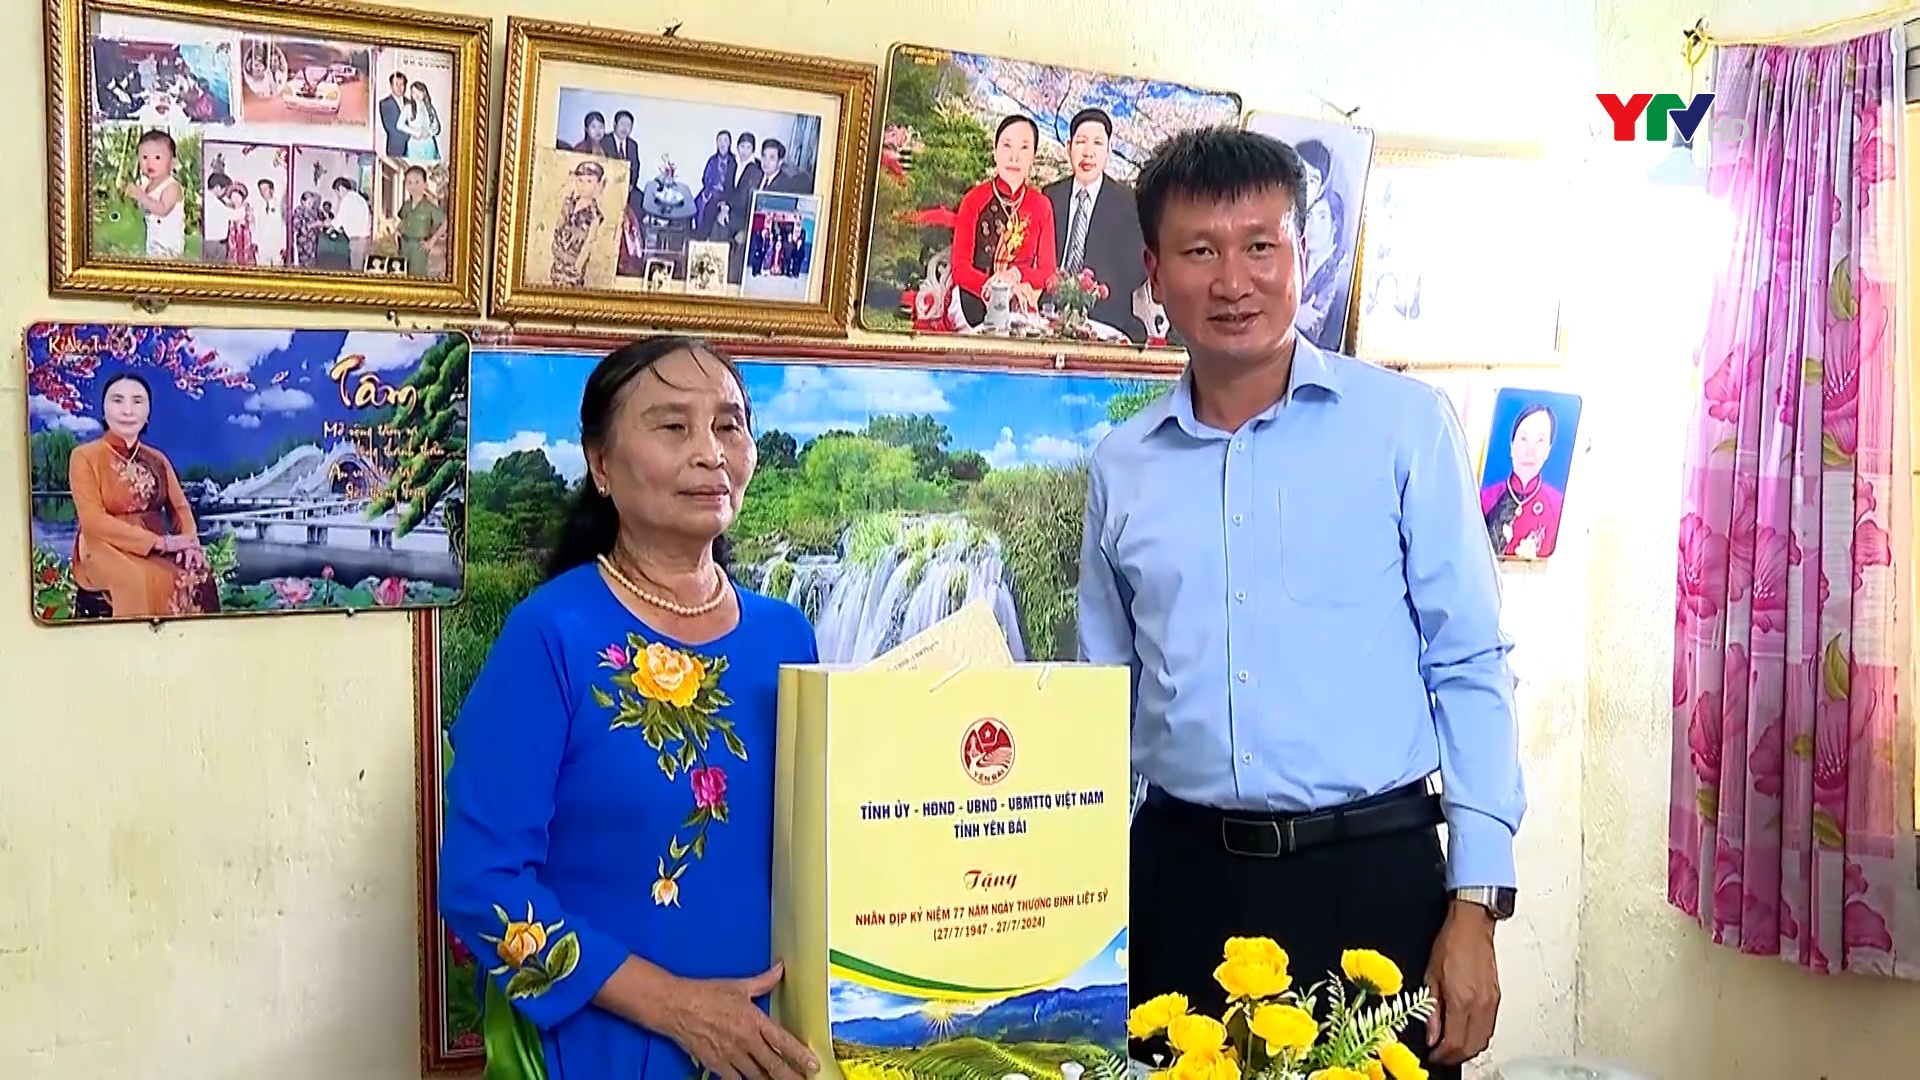 Đồng chí Chủ tịch UBND tỉnh Trần Huy Tuấn thăm, tặng quà người có công với cách mạng trên địa bàn thành phố Yên Bái